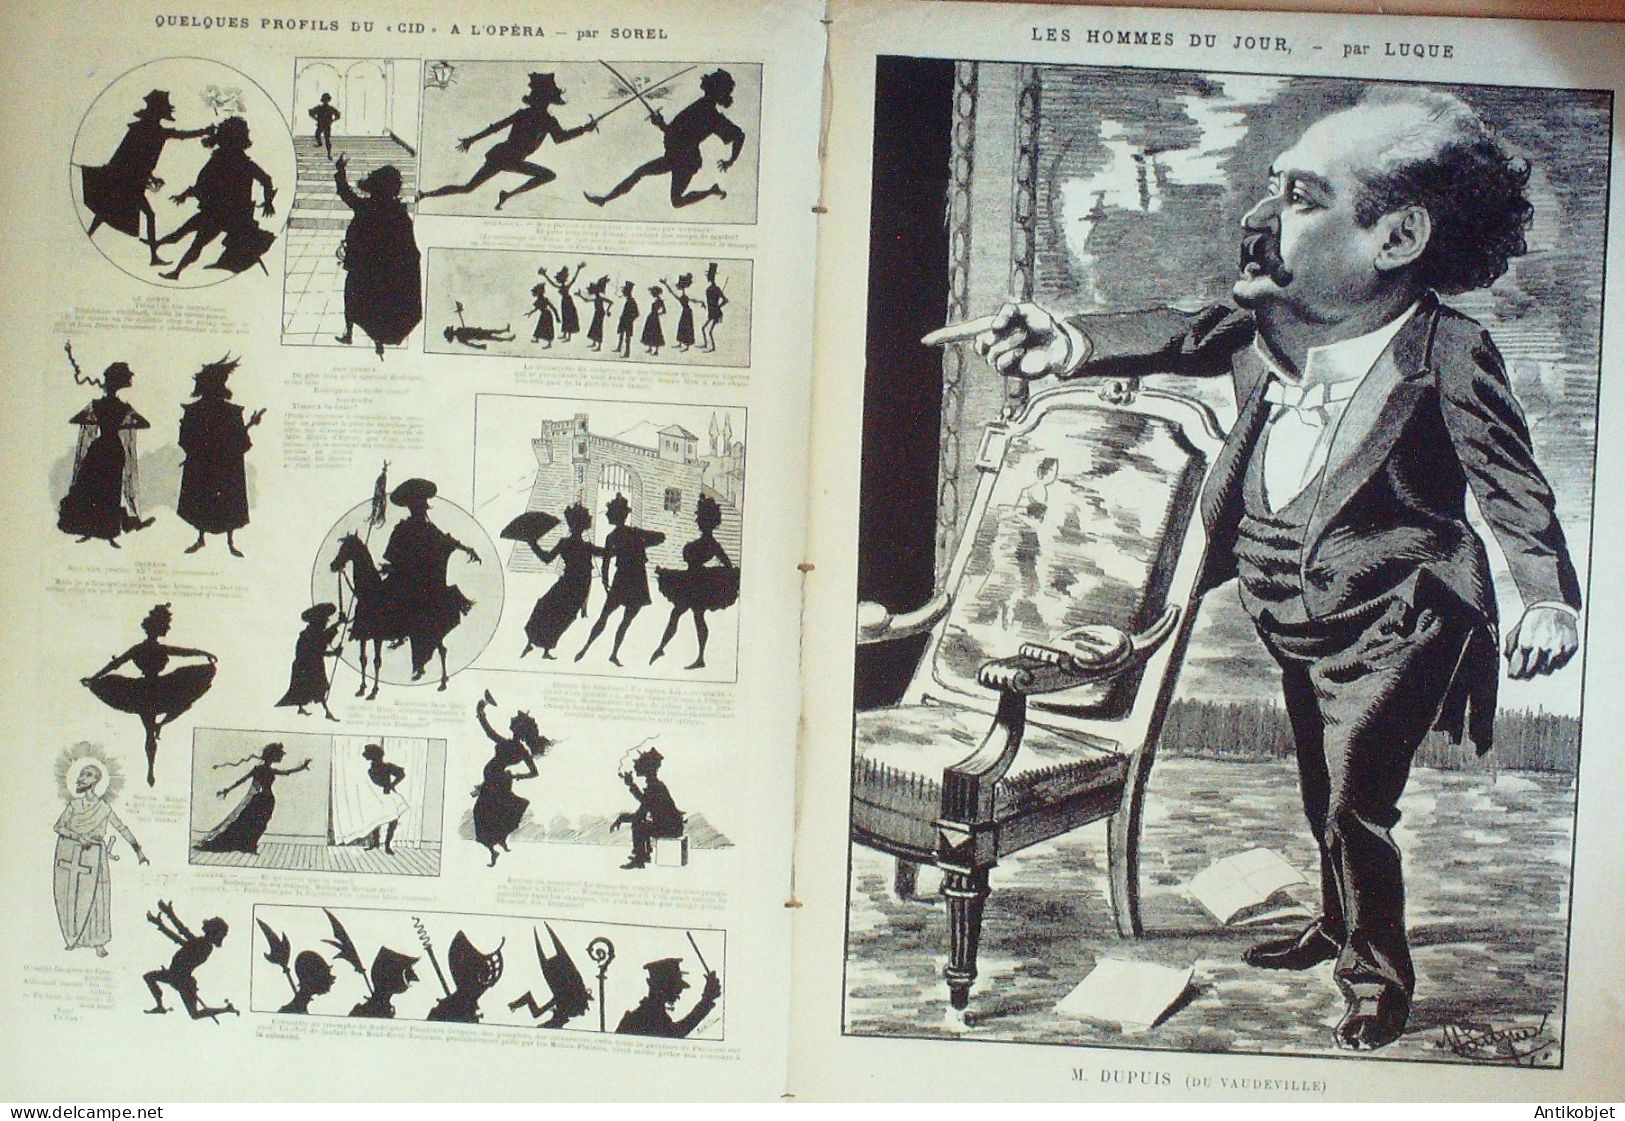 La Caricature 1886 N°318 En Mer Tiret-Bognet Octave Uzanne Dupuis Par Luque Sorel Robida - Tijdschriften - Voor 1900